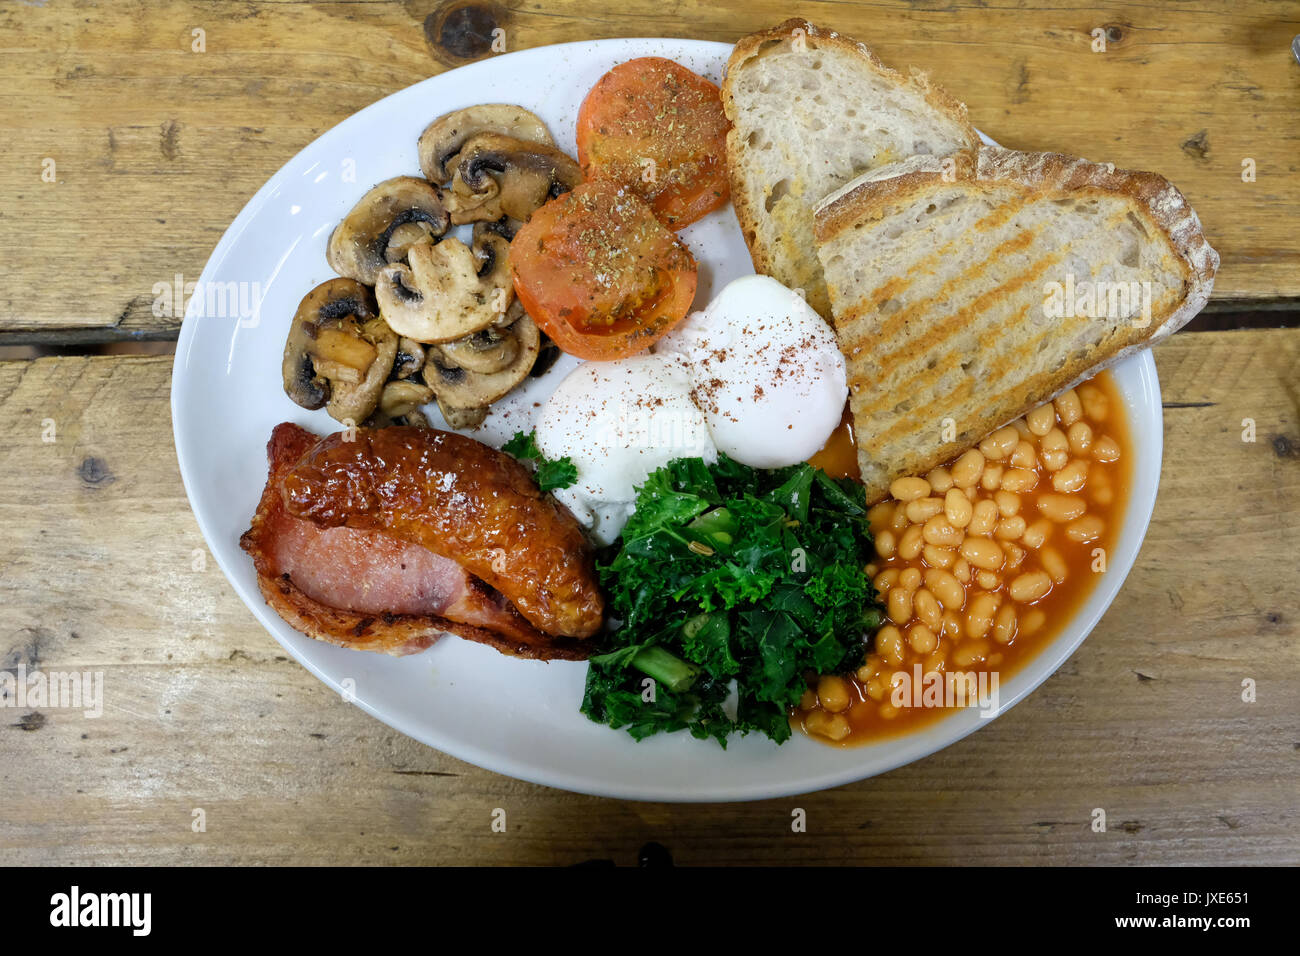 Eine gesunde Alternative zum herkömmlichen Englisches Frühstück mit pochierten Eiern, Tomaten, Wurst, Speck, Pilzen und Kale Stockfoto